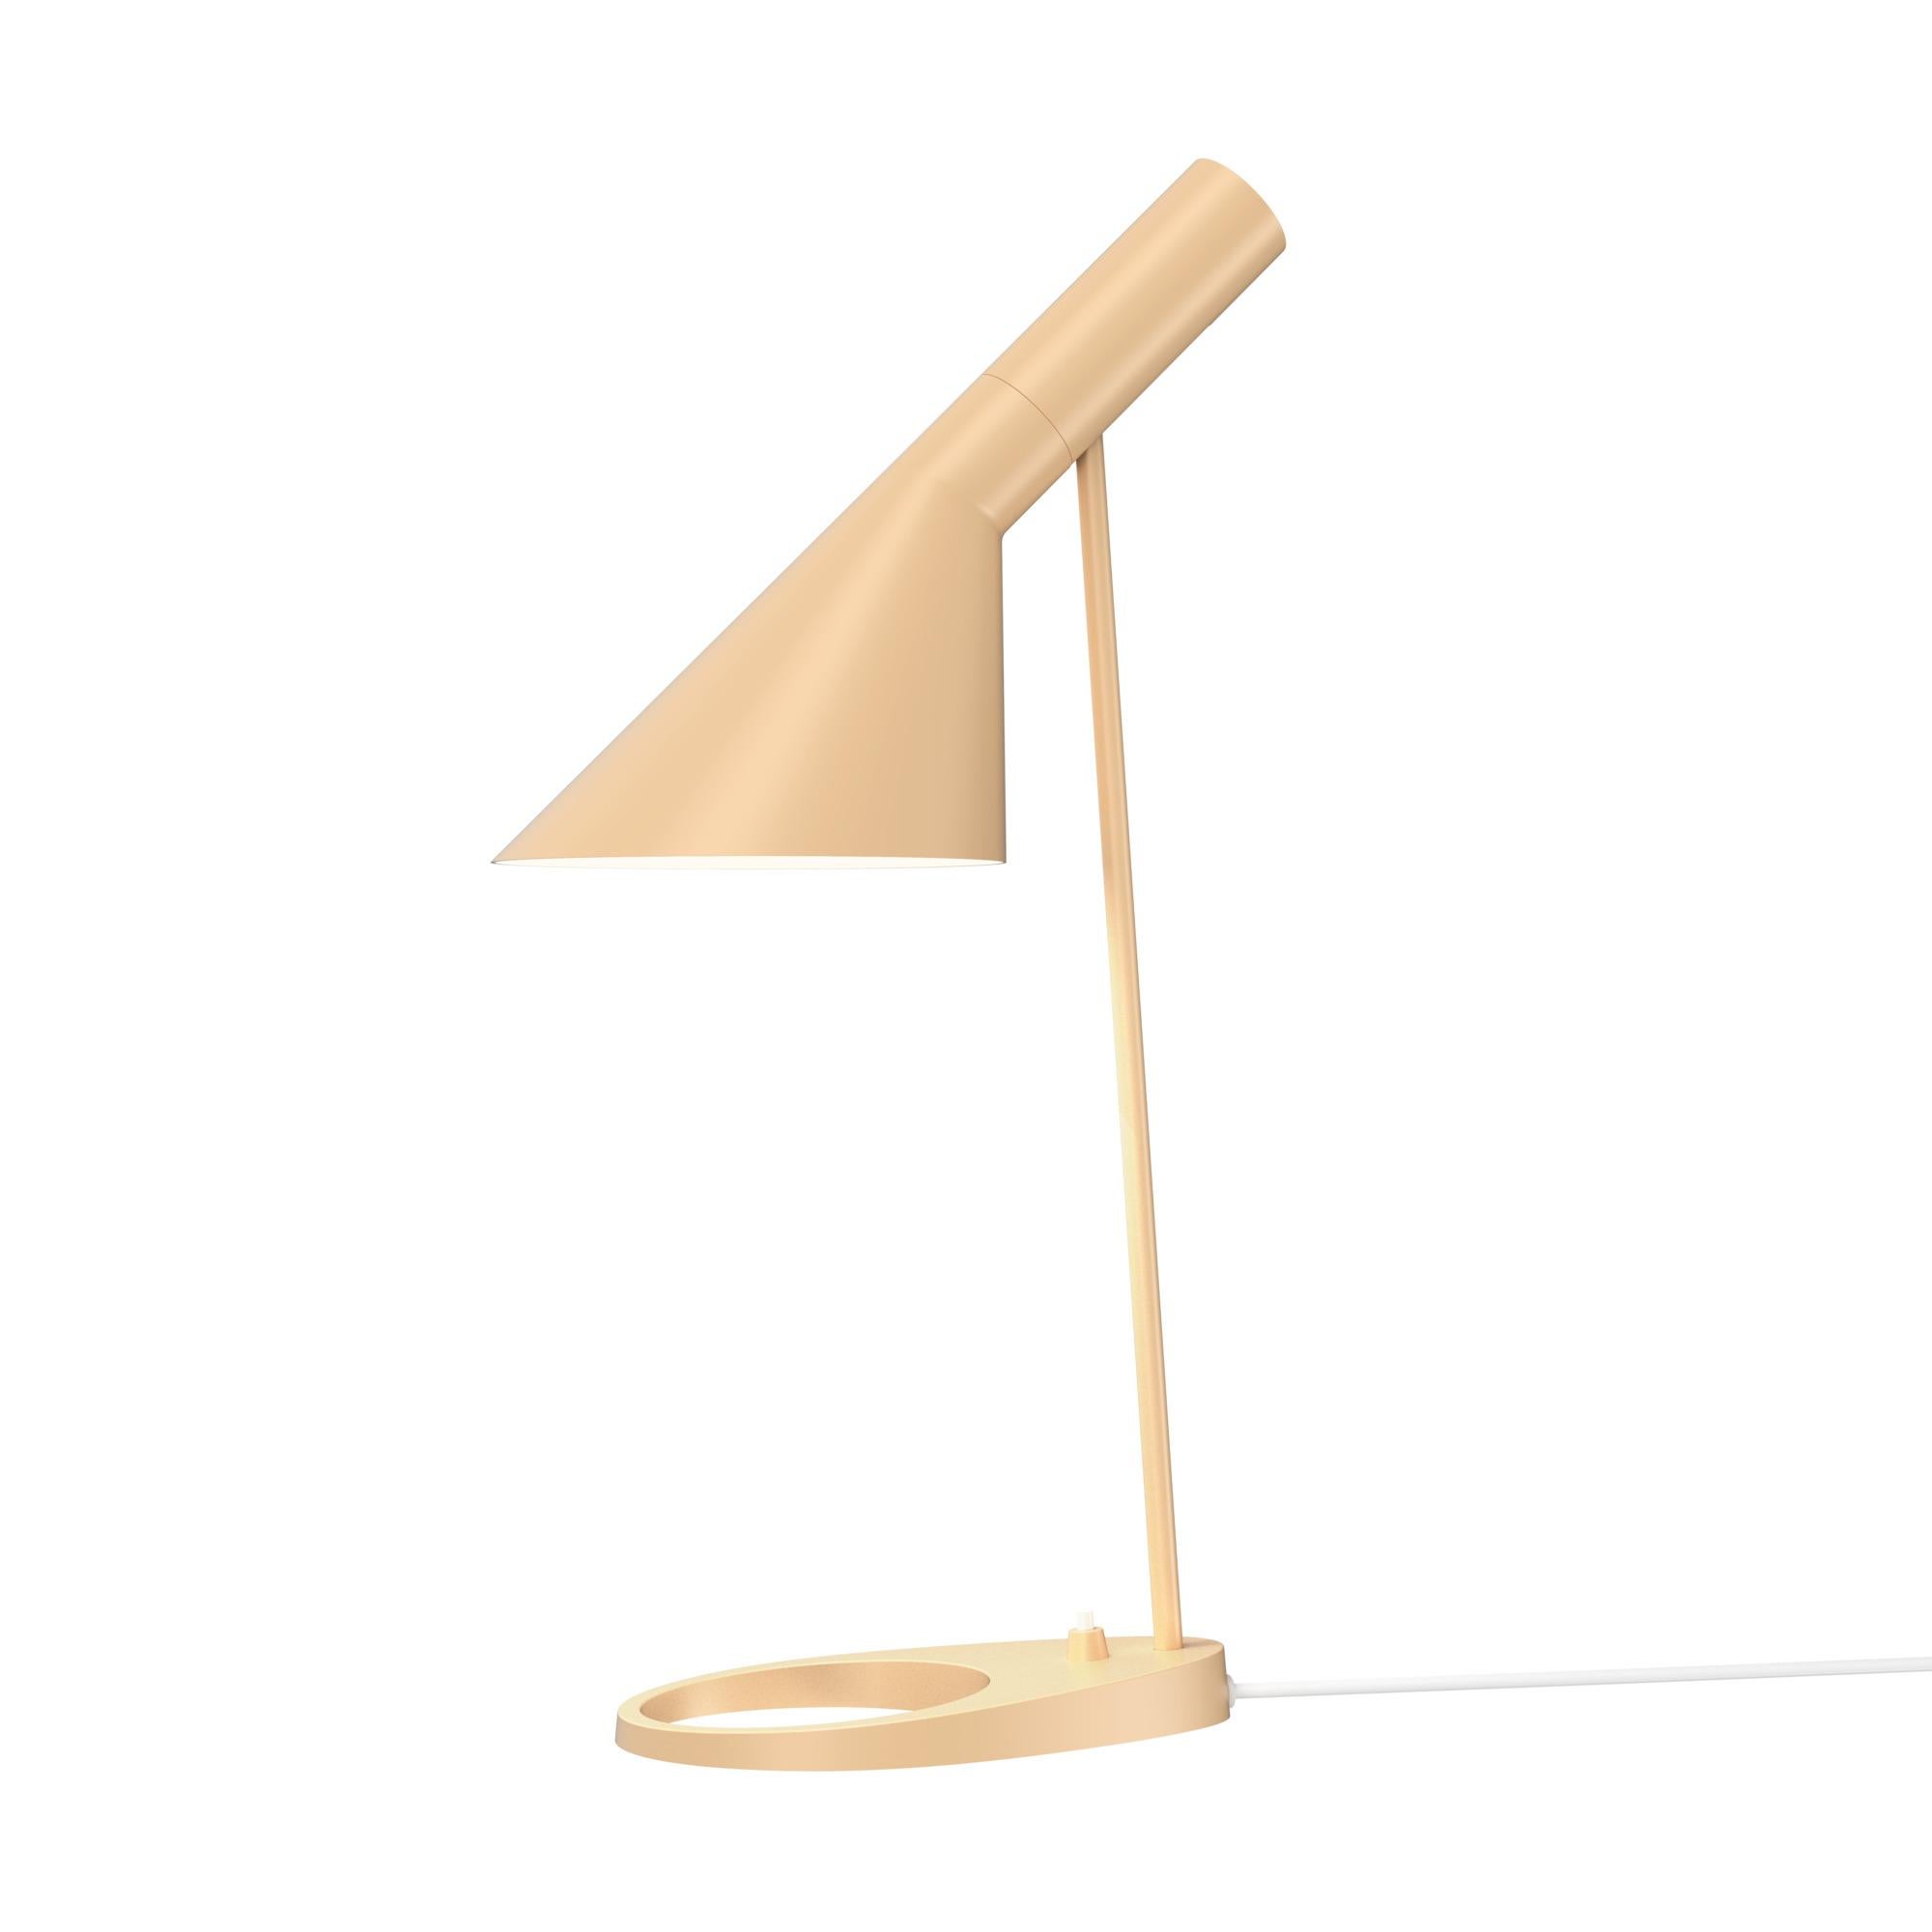 Arne Jacobsen AJ Table Lamp in Dusty Blue for Louis Poulsen For Sale 7